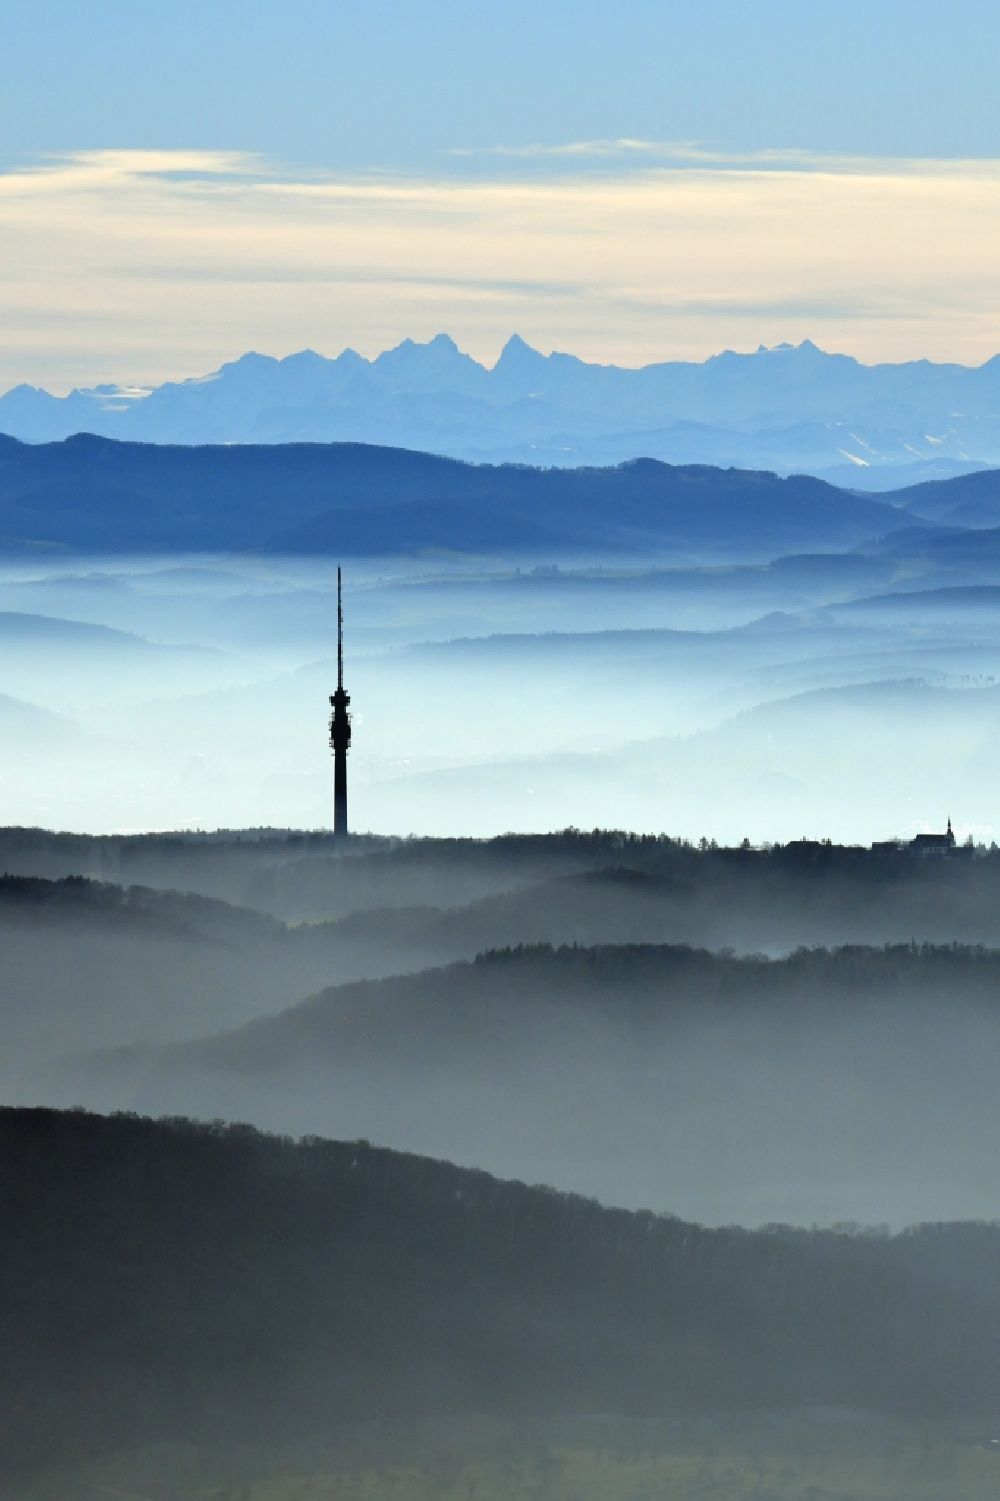 Bettingen von oben - Nebel- Bedeckung über dem Fernsehturm St. Chrischona in Bettingen im Kanton Basel, Schweiz